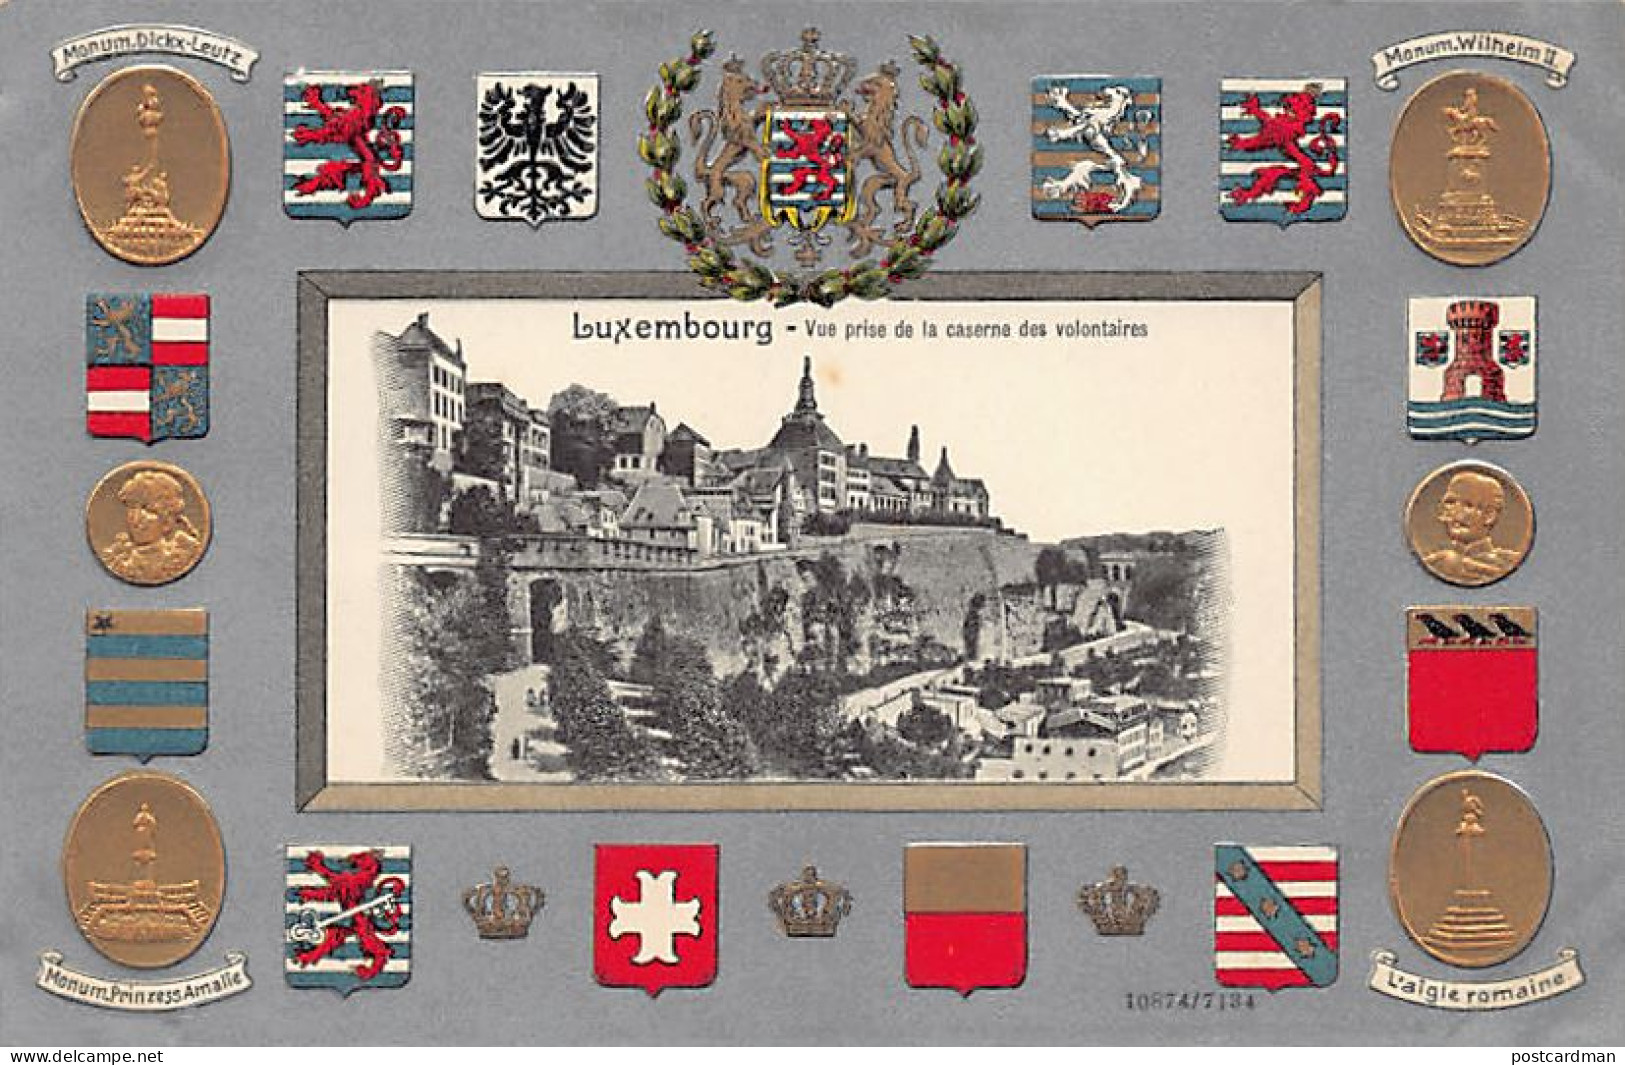 LUXEMBOURG-VILLE - Carte Gaufrée - Armoiries - Vue Prise De La Caserne Des Volontaires - Ed. H. Guggenheim & Co. 7134 - Luxemburg - Stadt